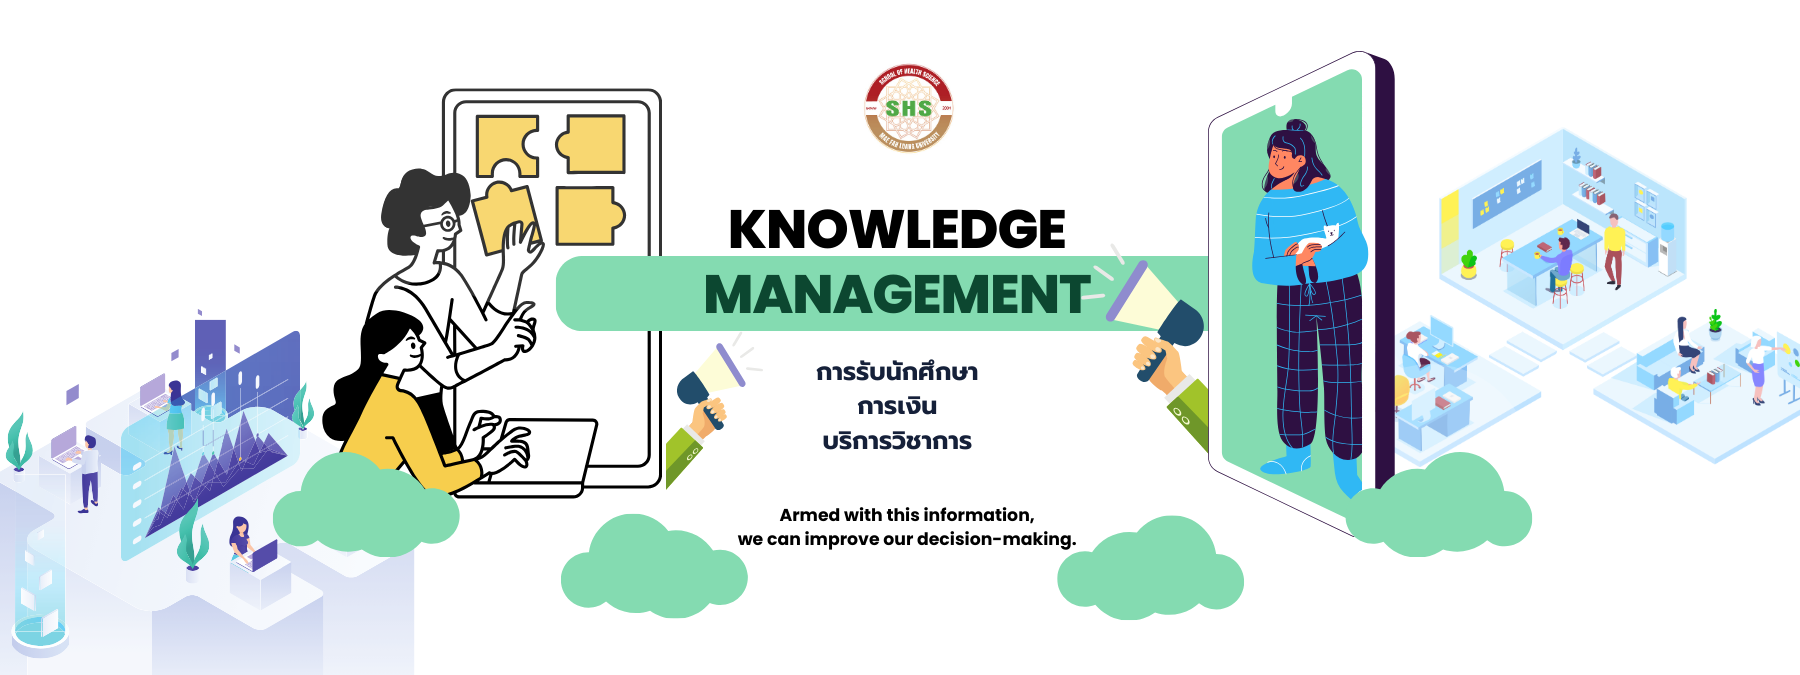 KnowledgeManagement